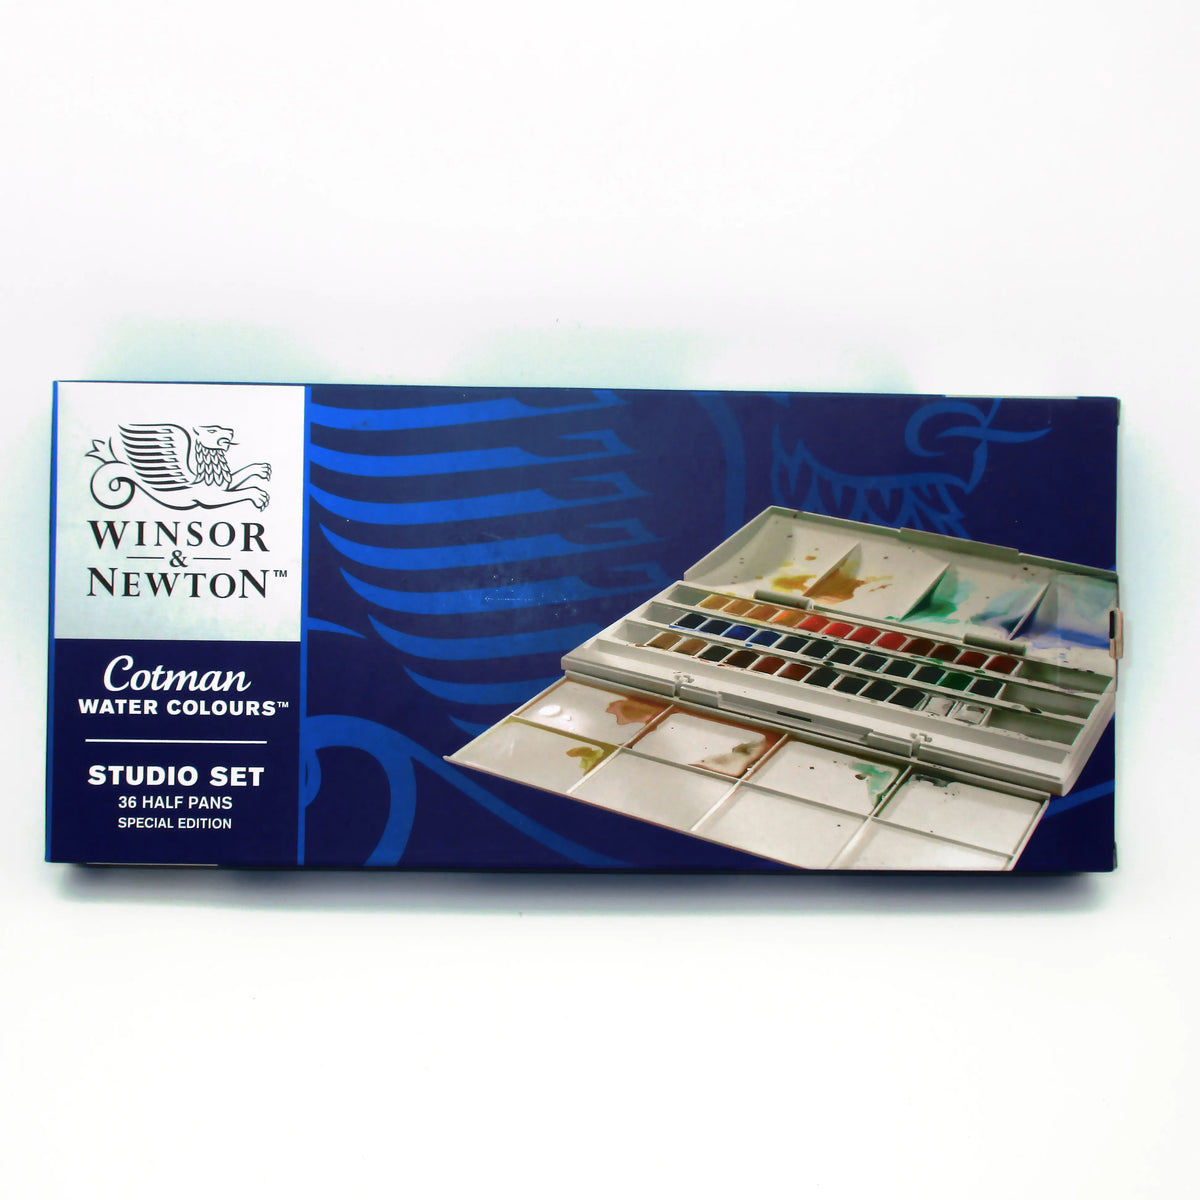 Winsor & Newton Cotman Water Colour Studio Set of 24 Whole Pans